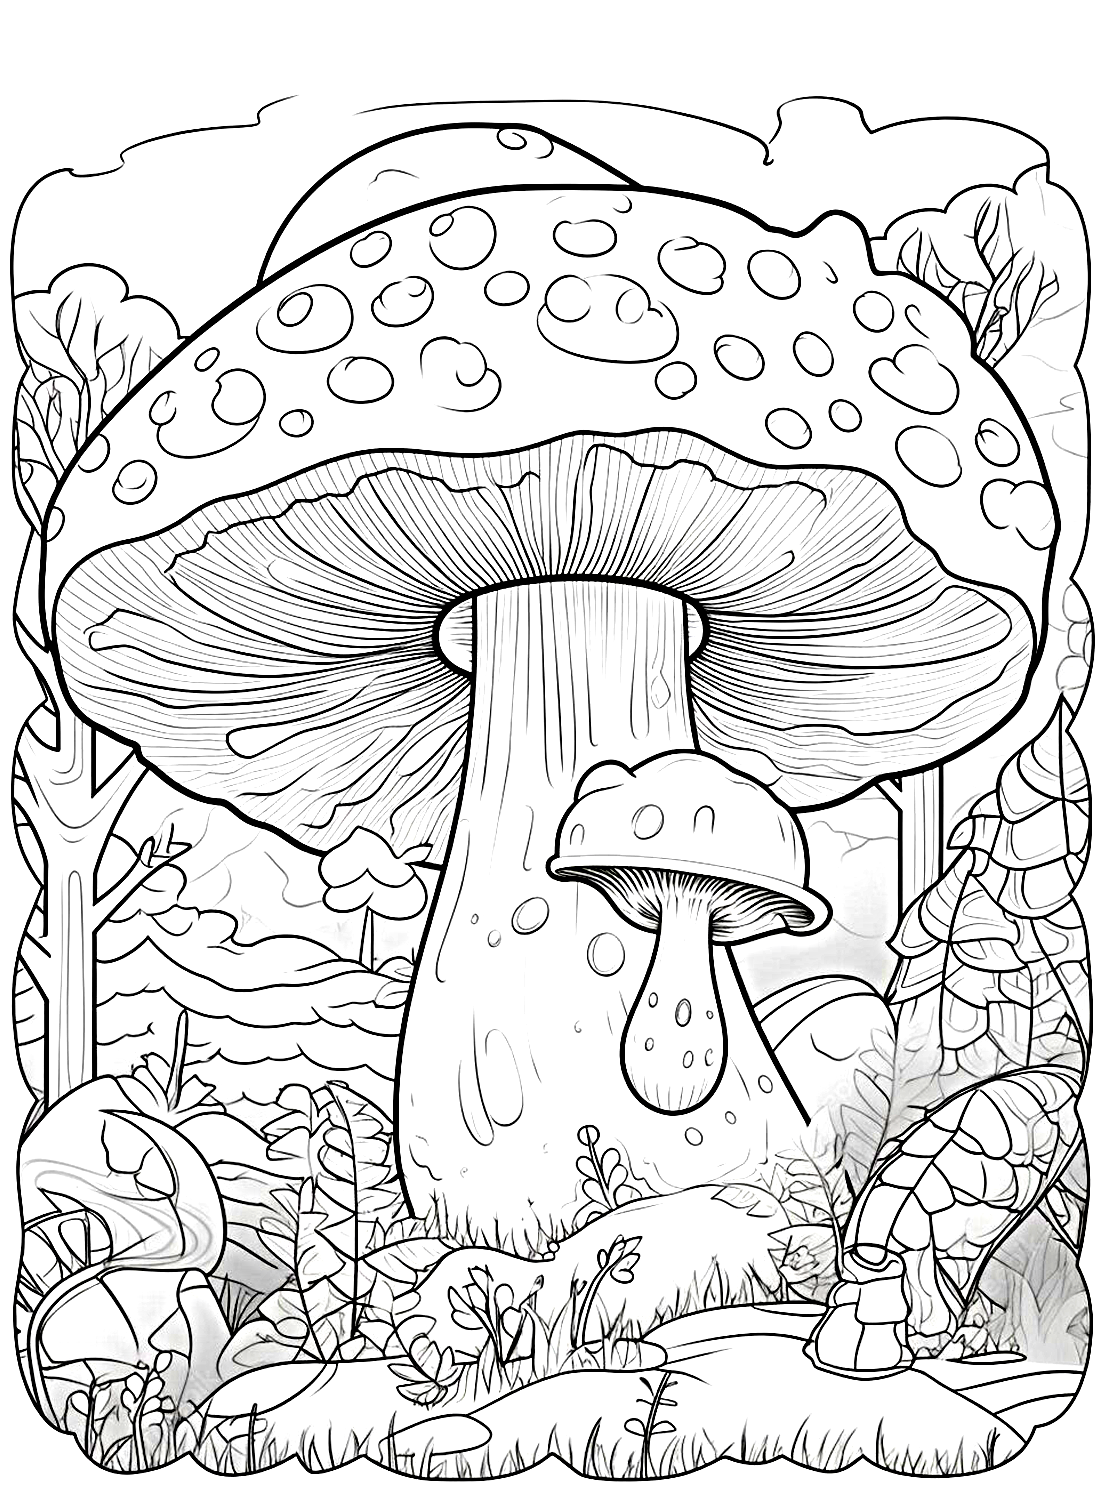 Гигантская картинка с изображением грибов из журнала Mushroom.